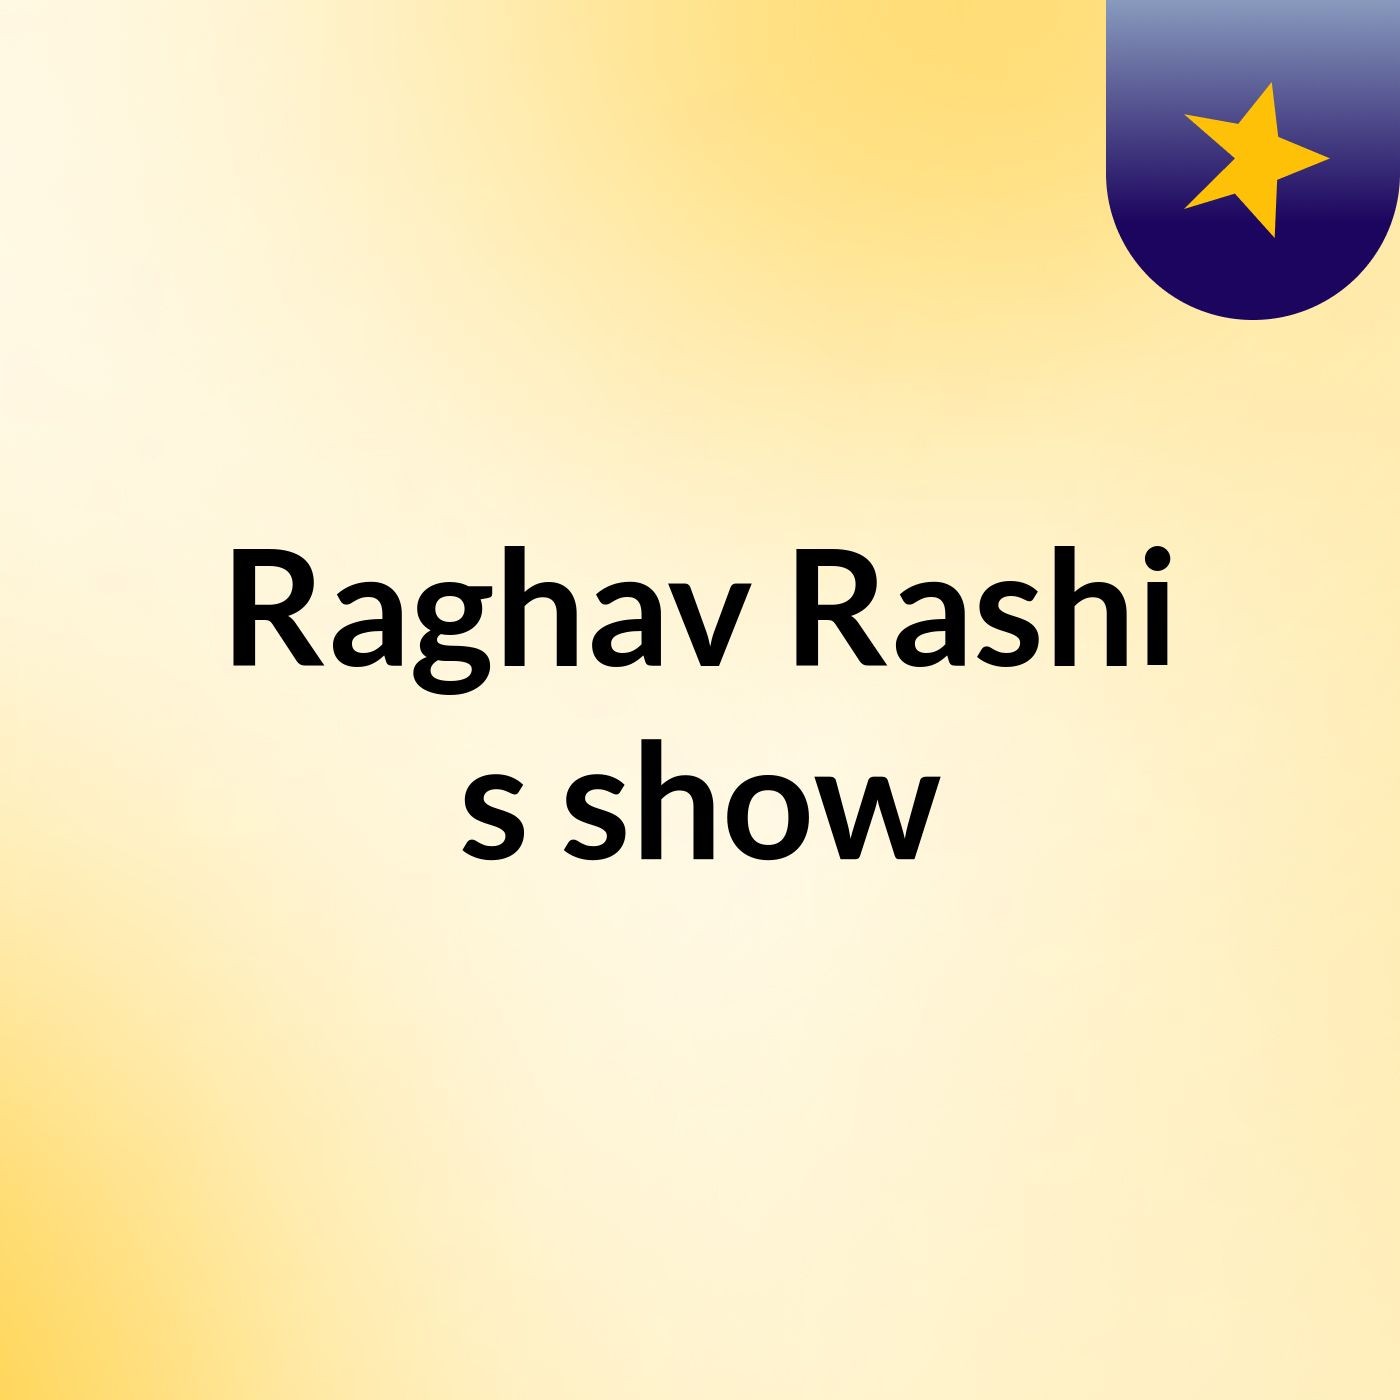 Raghav Rashi's show